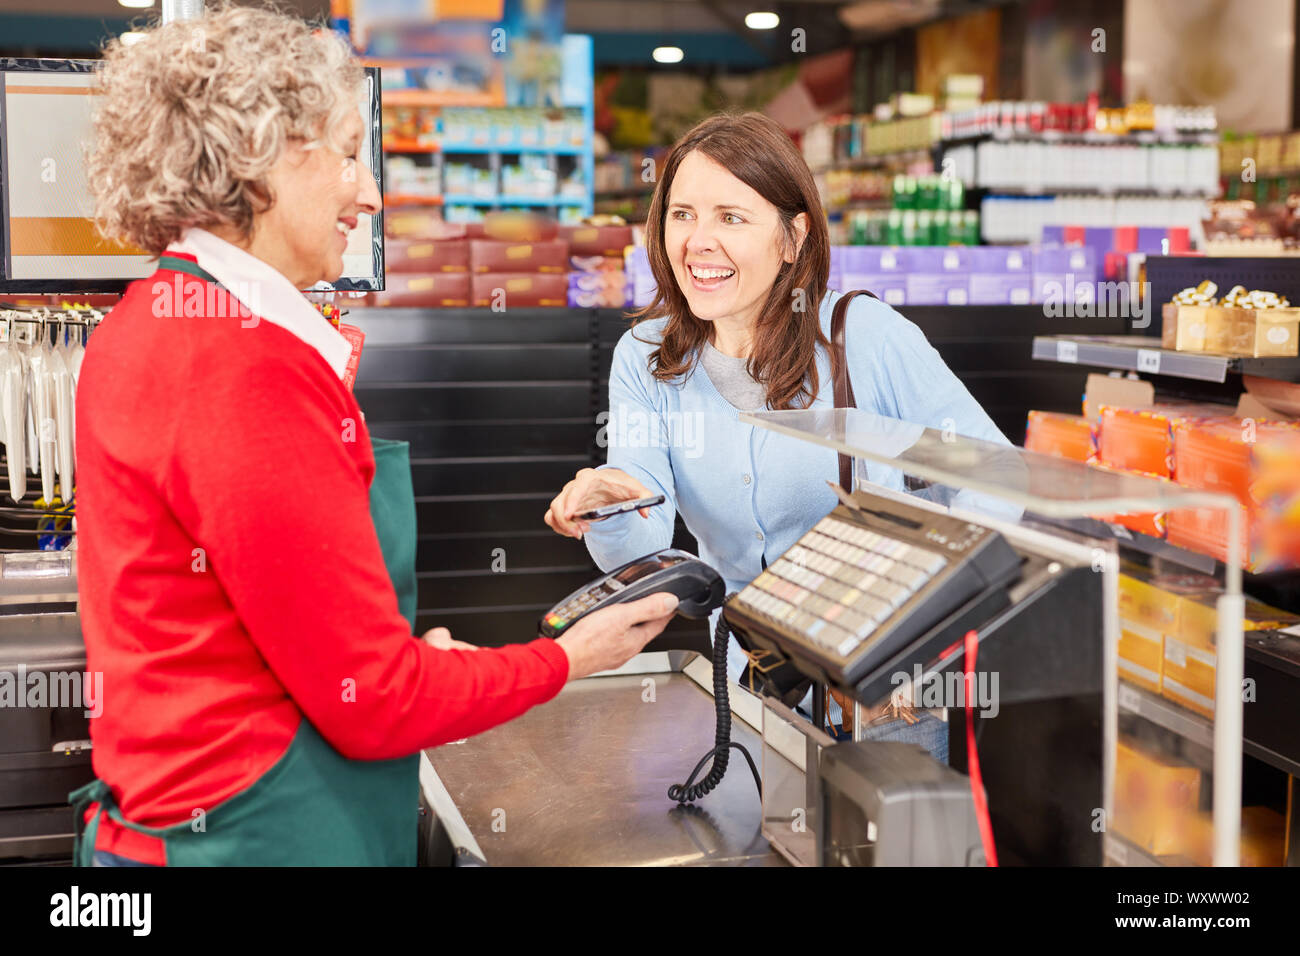 Jeune femme fait le paiement mobile smartphone NFC at supermarket checkout Banque D'Images